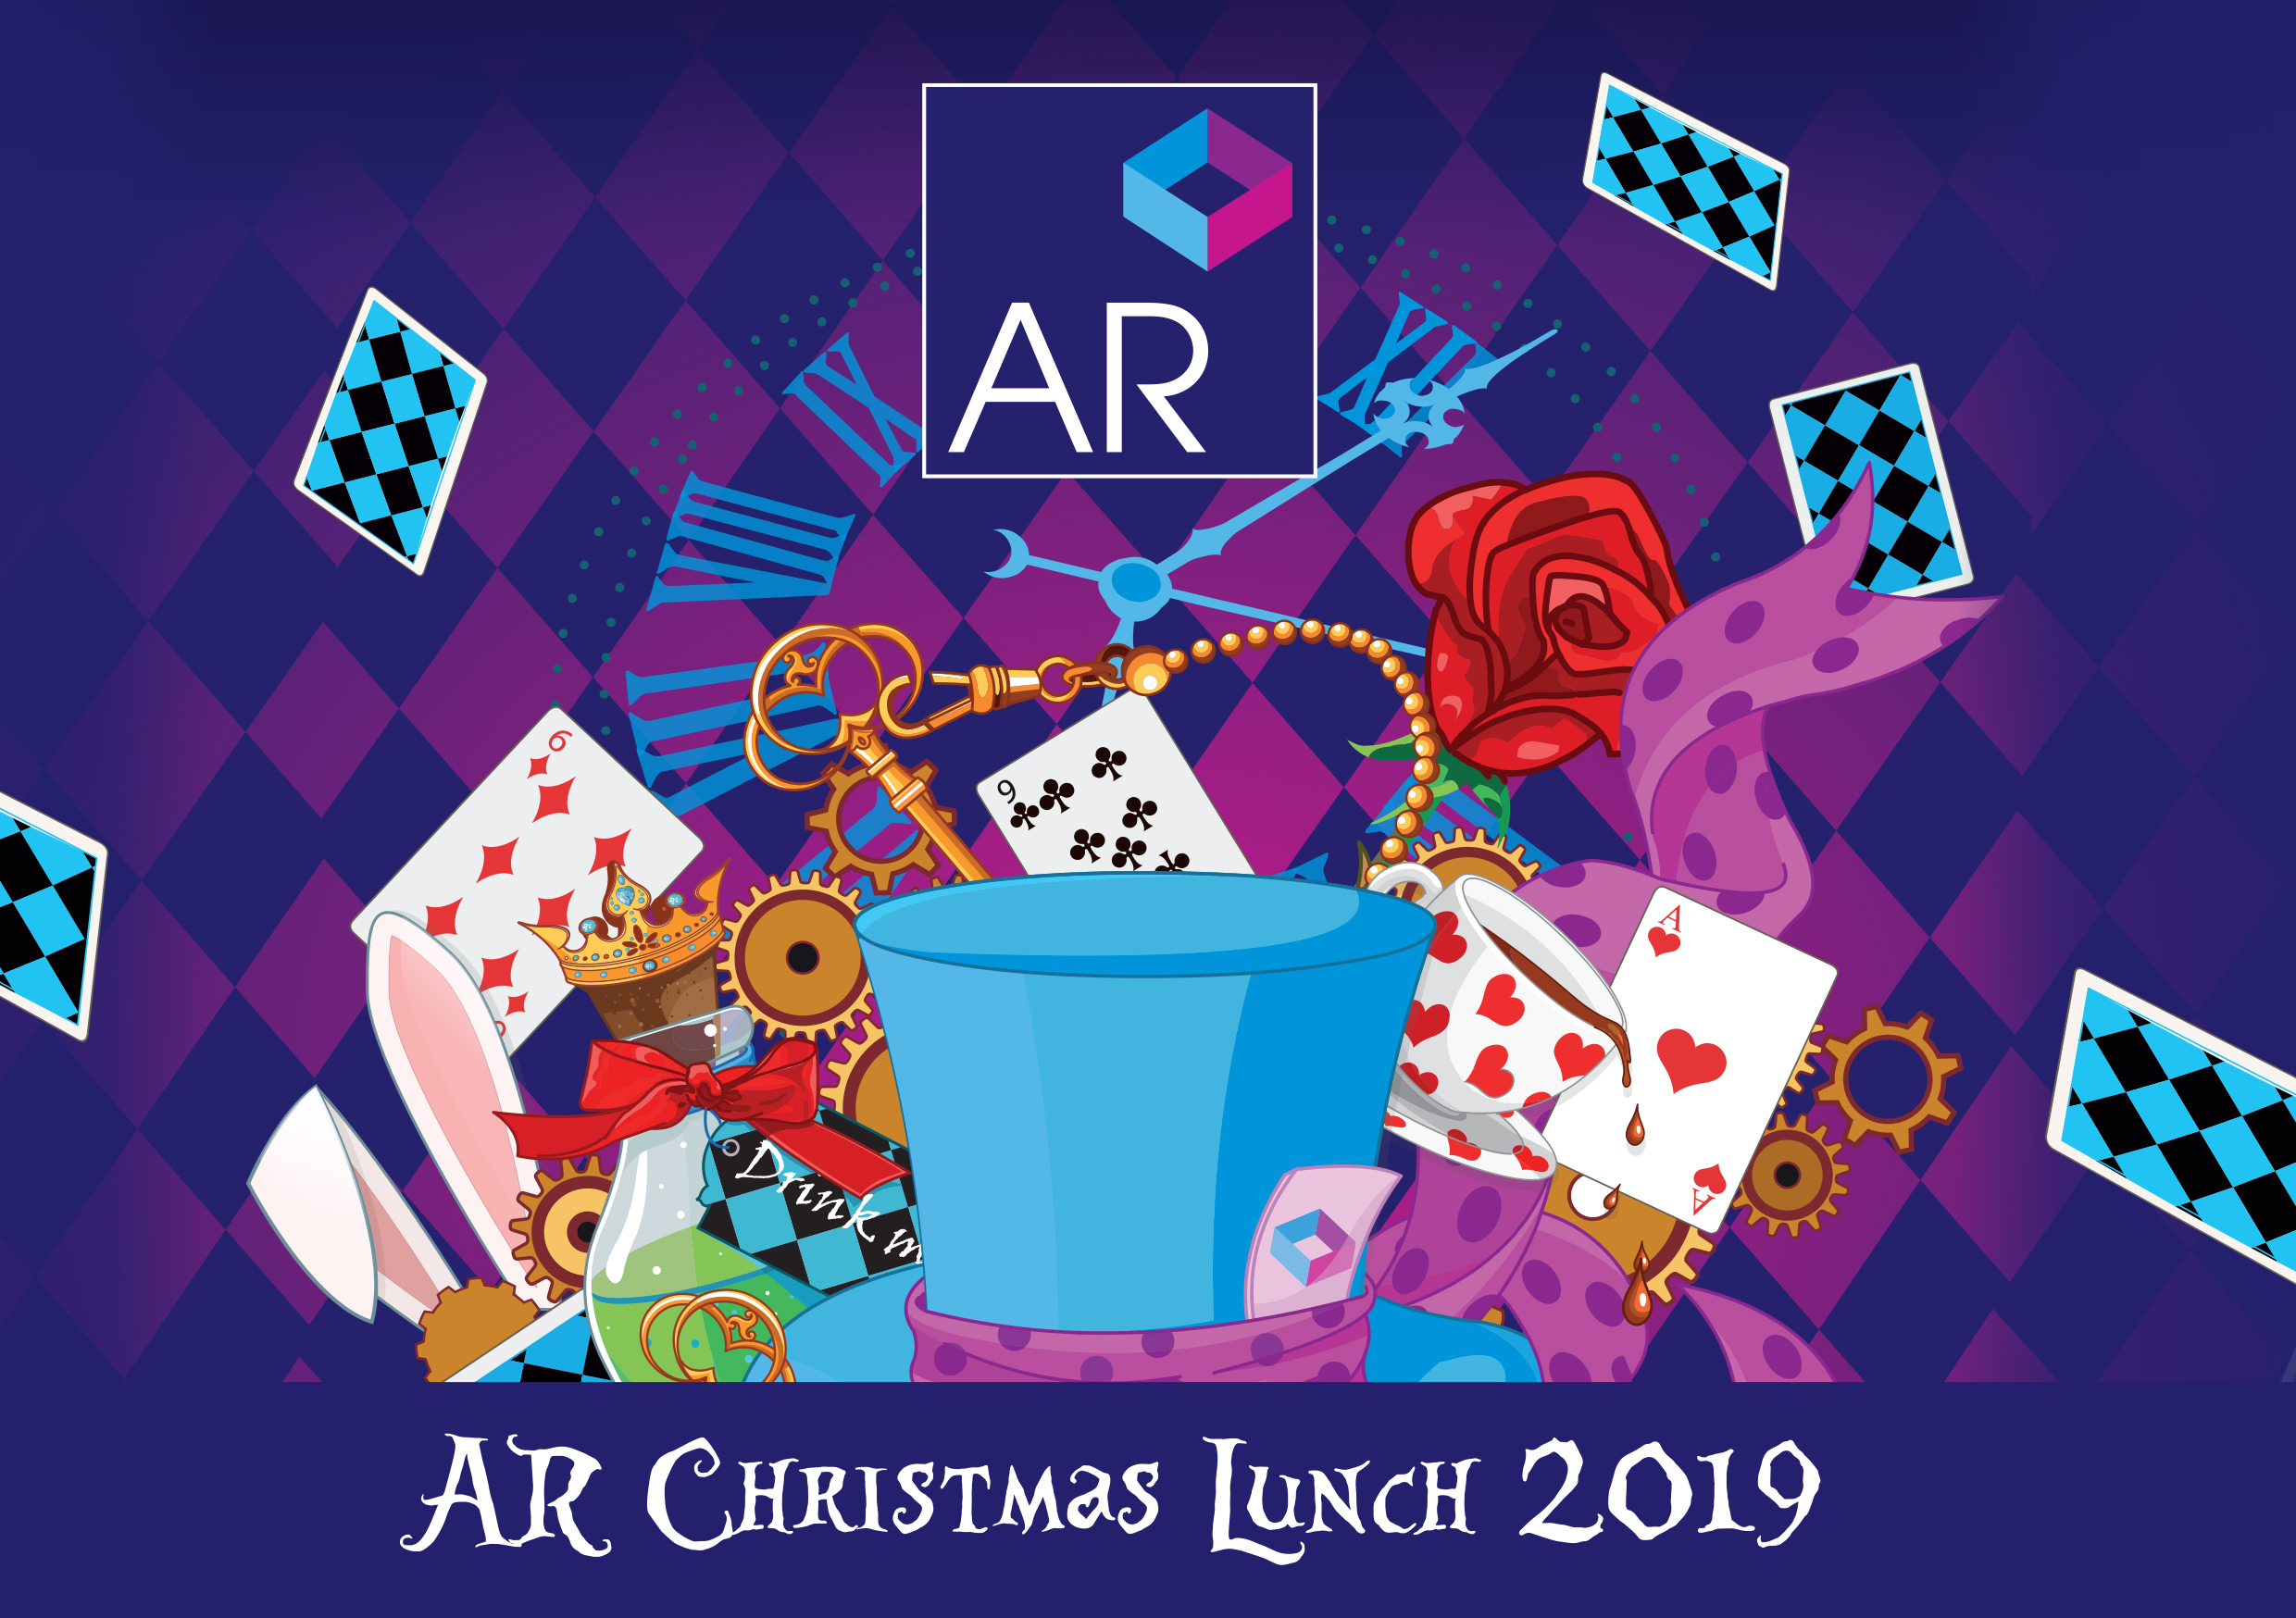 AR Christmas Lunch 2019 